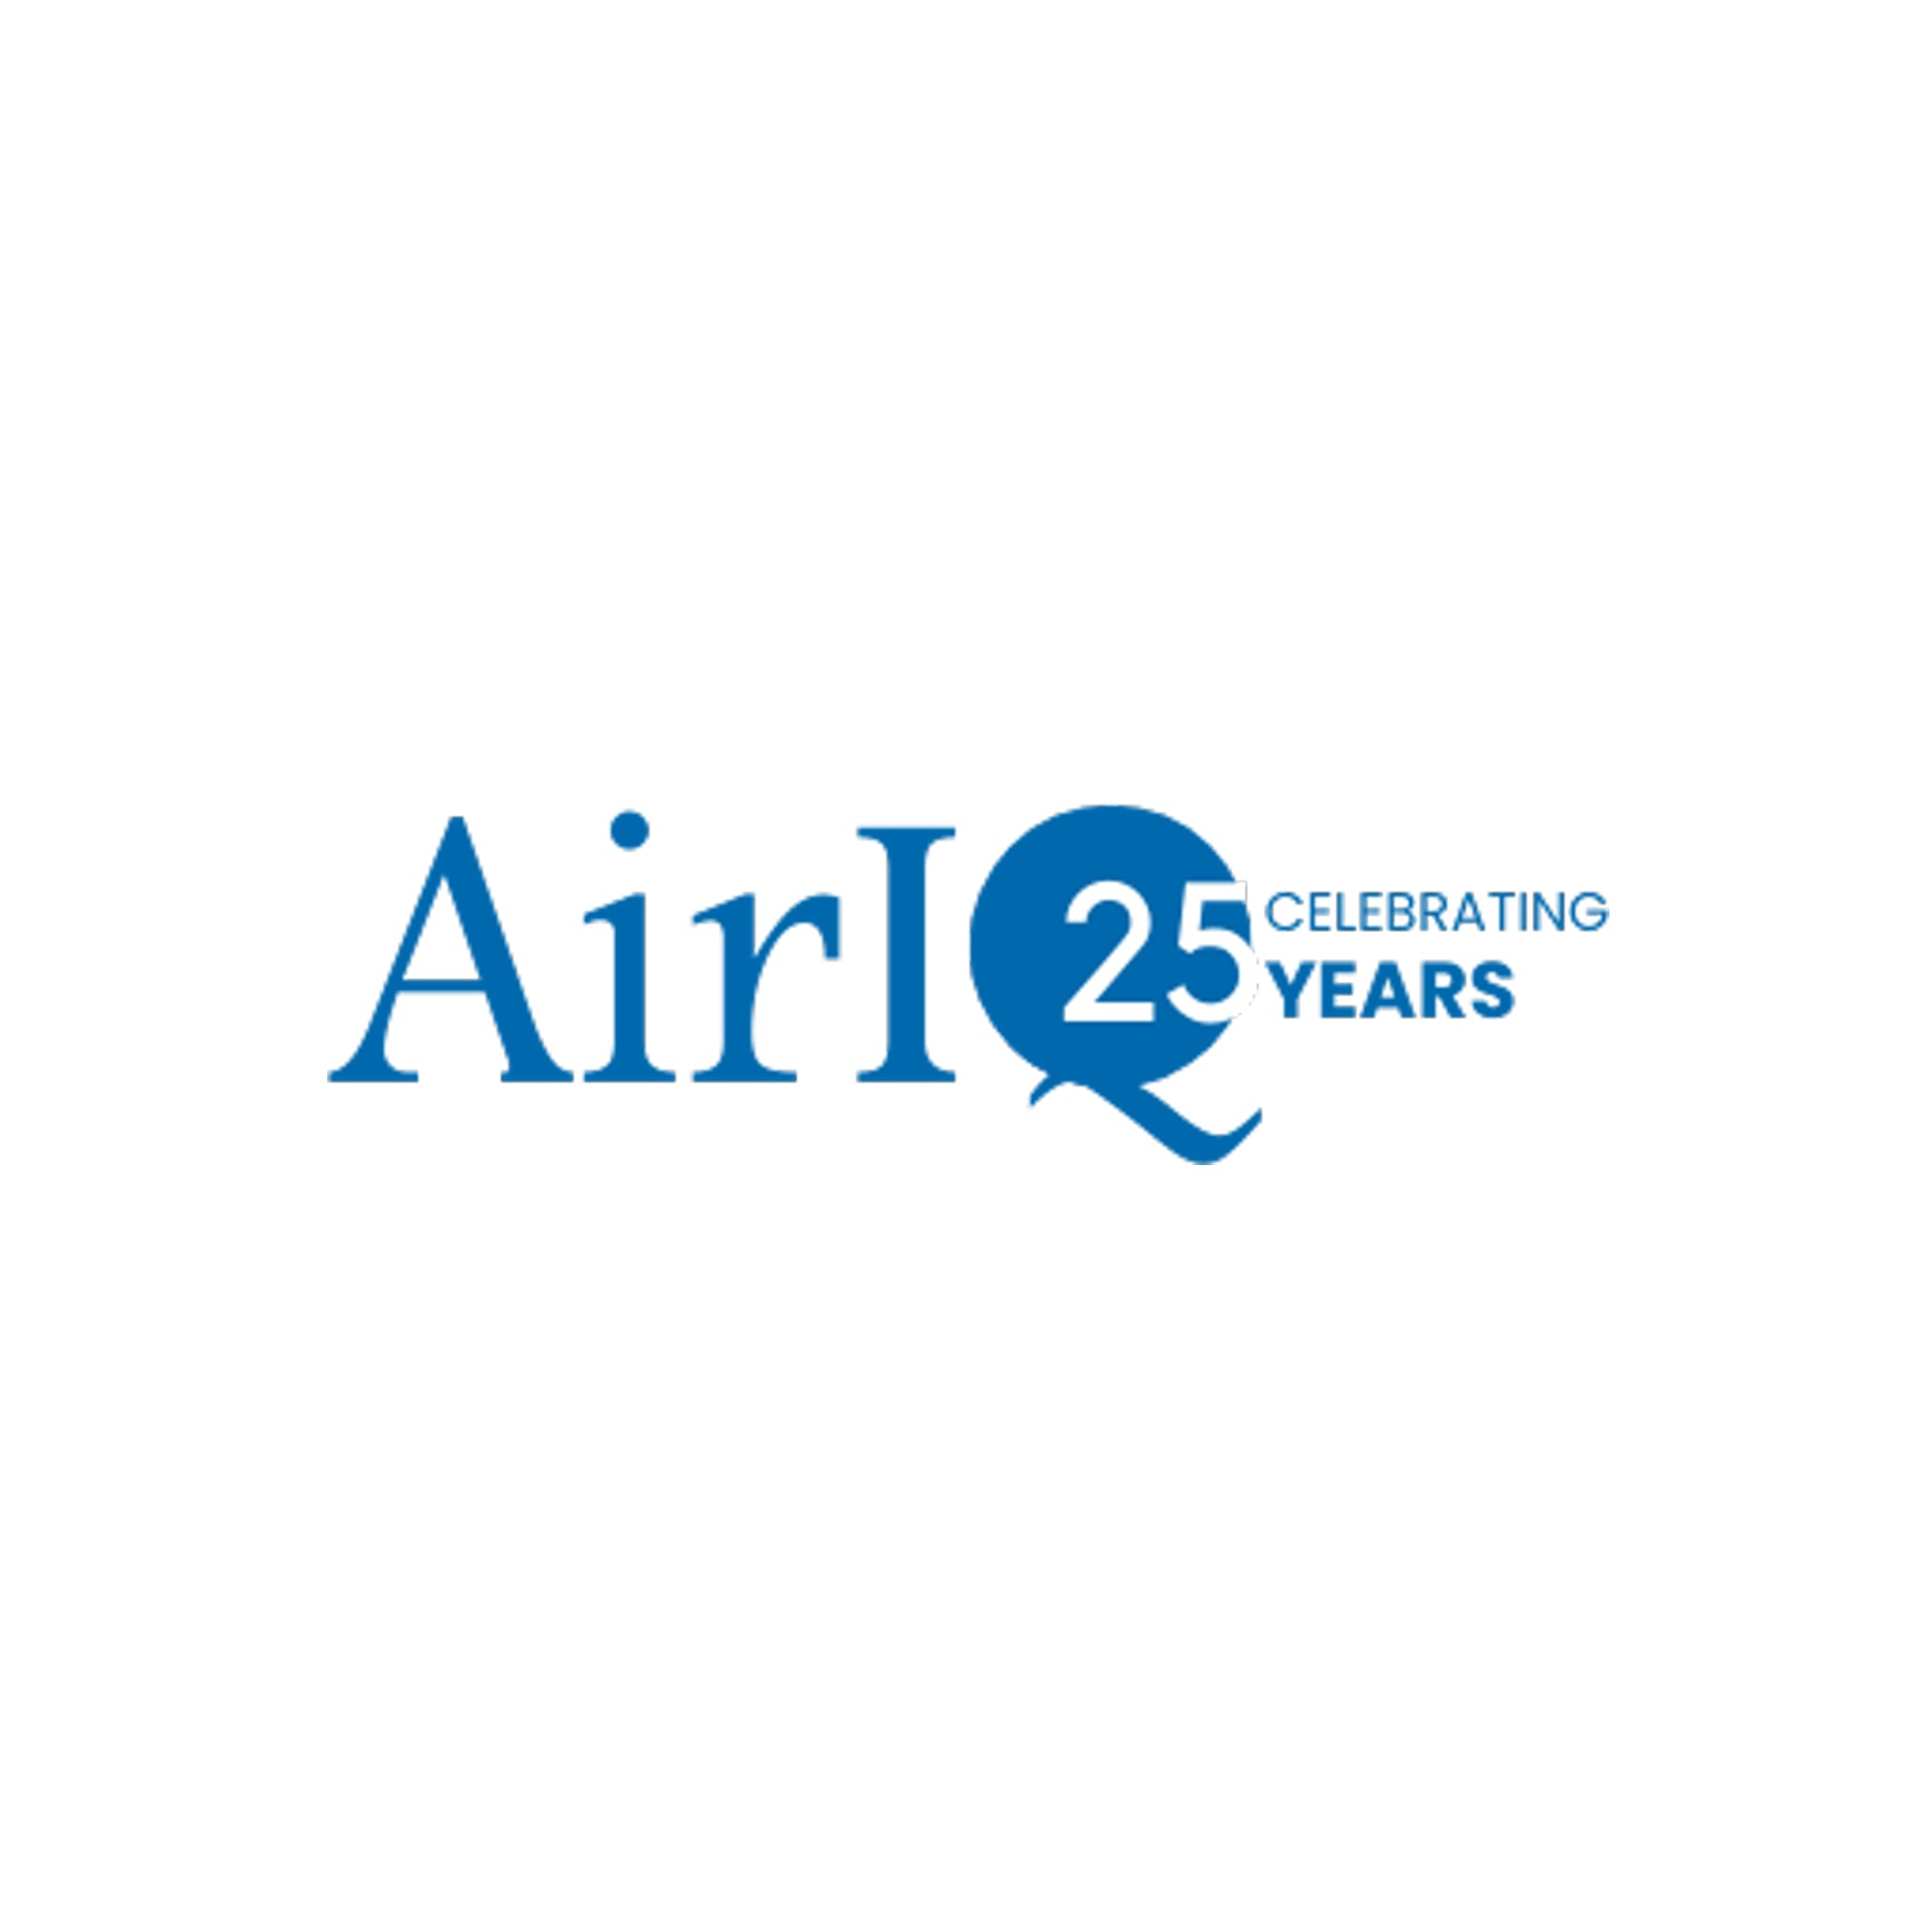 AirIQ Annual Tracking Service